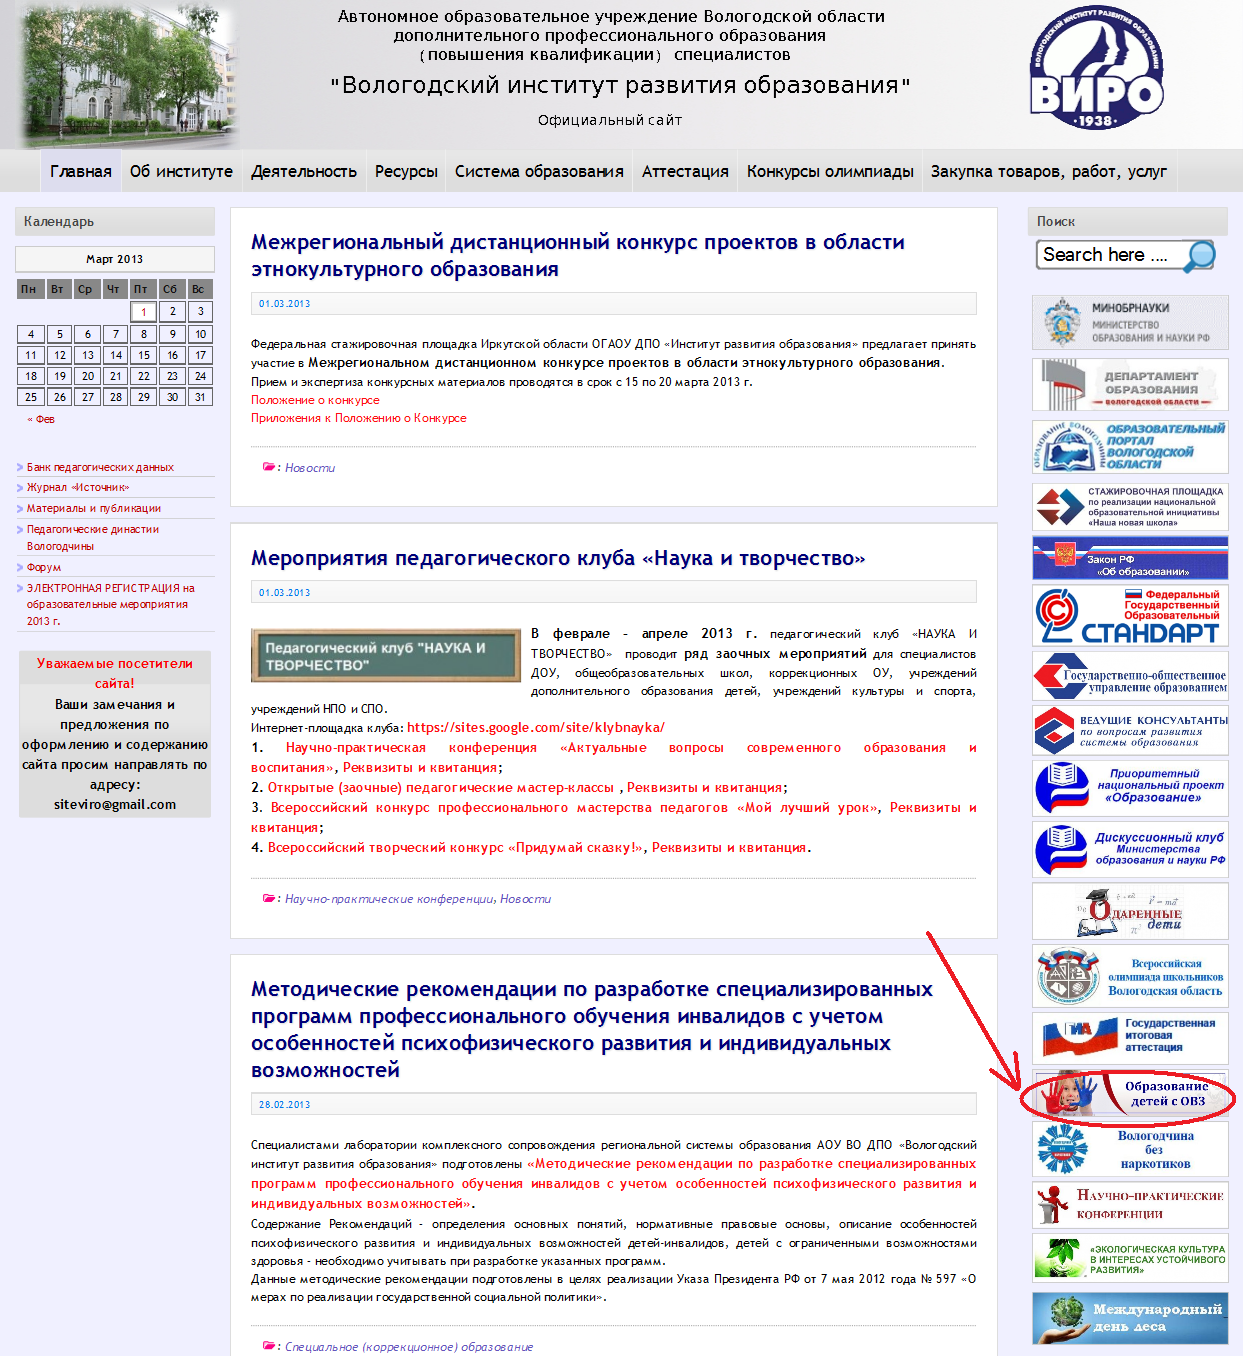 Сайт официального портала вологодской. Департамент образования Вологодской области.